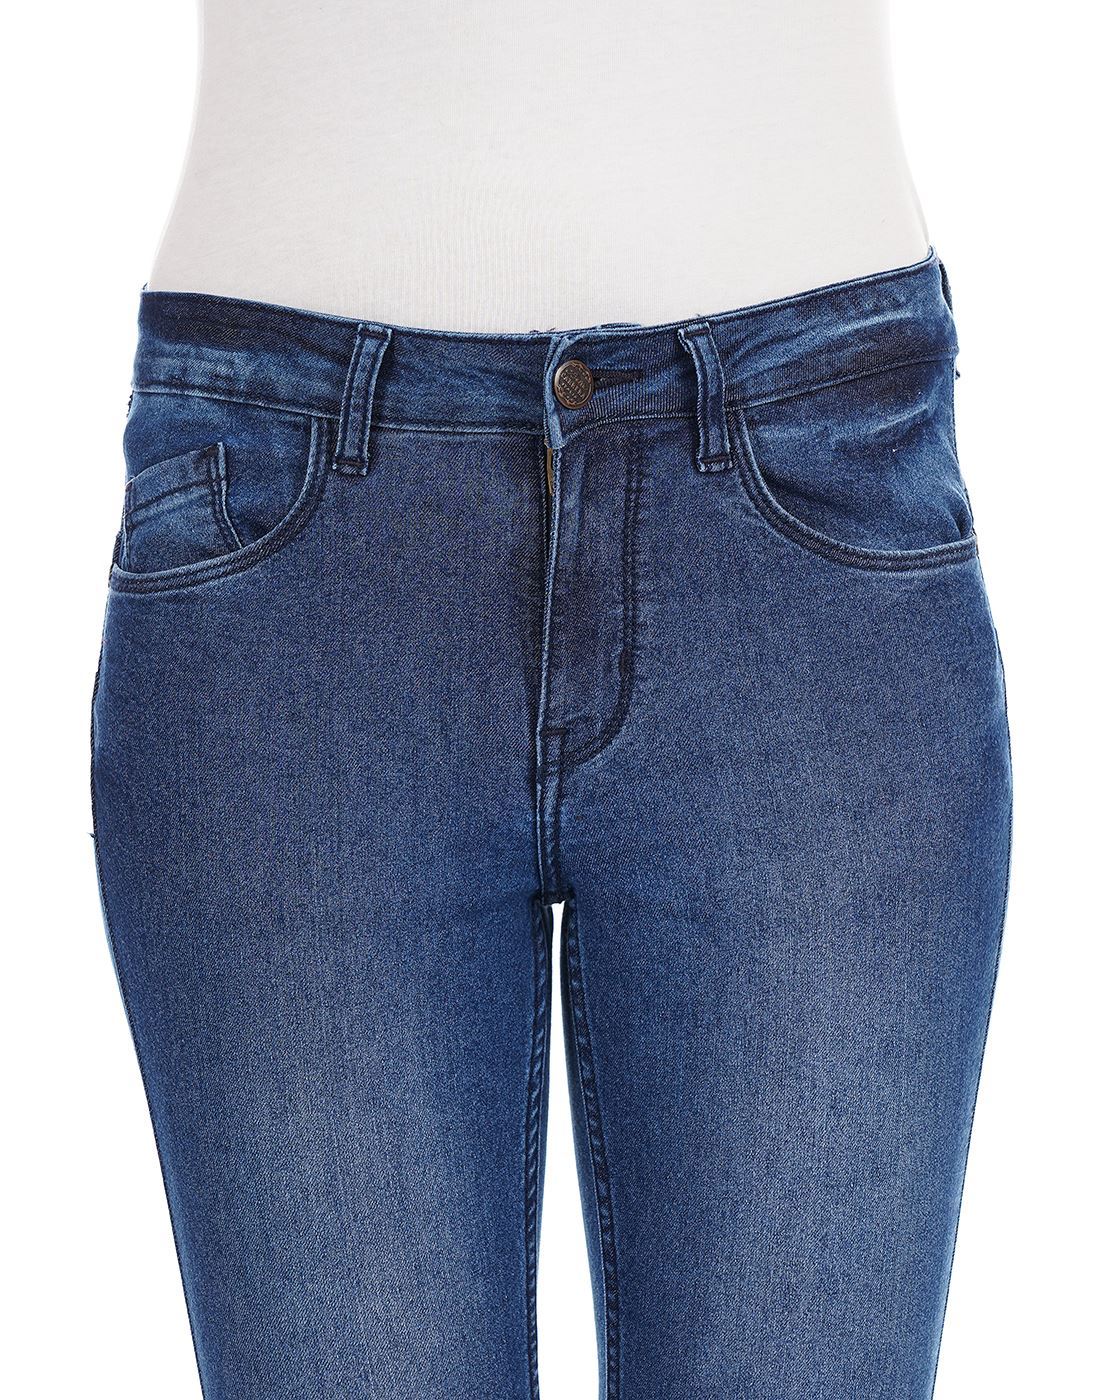 Carrera Women Casual Wear Blue Jeans